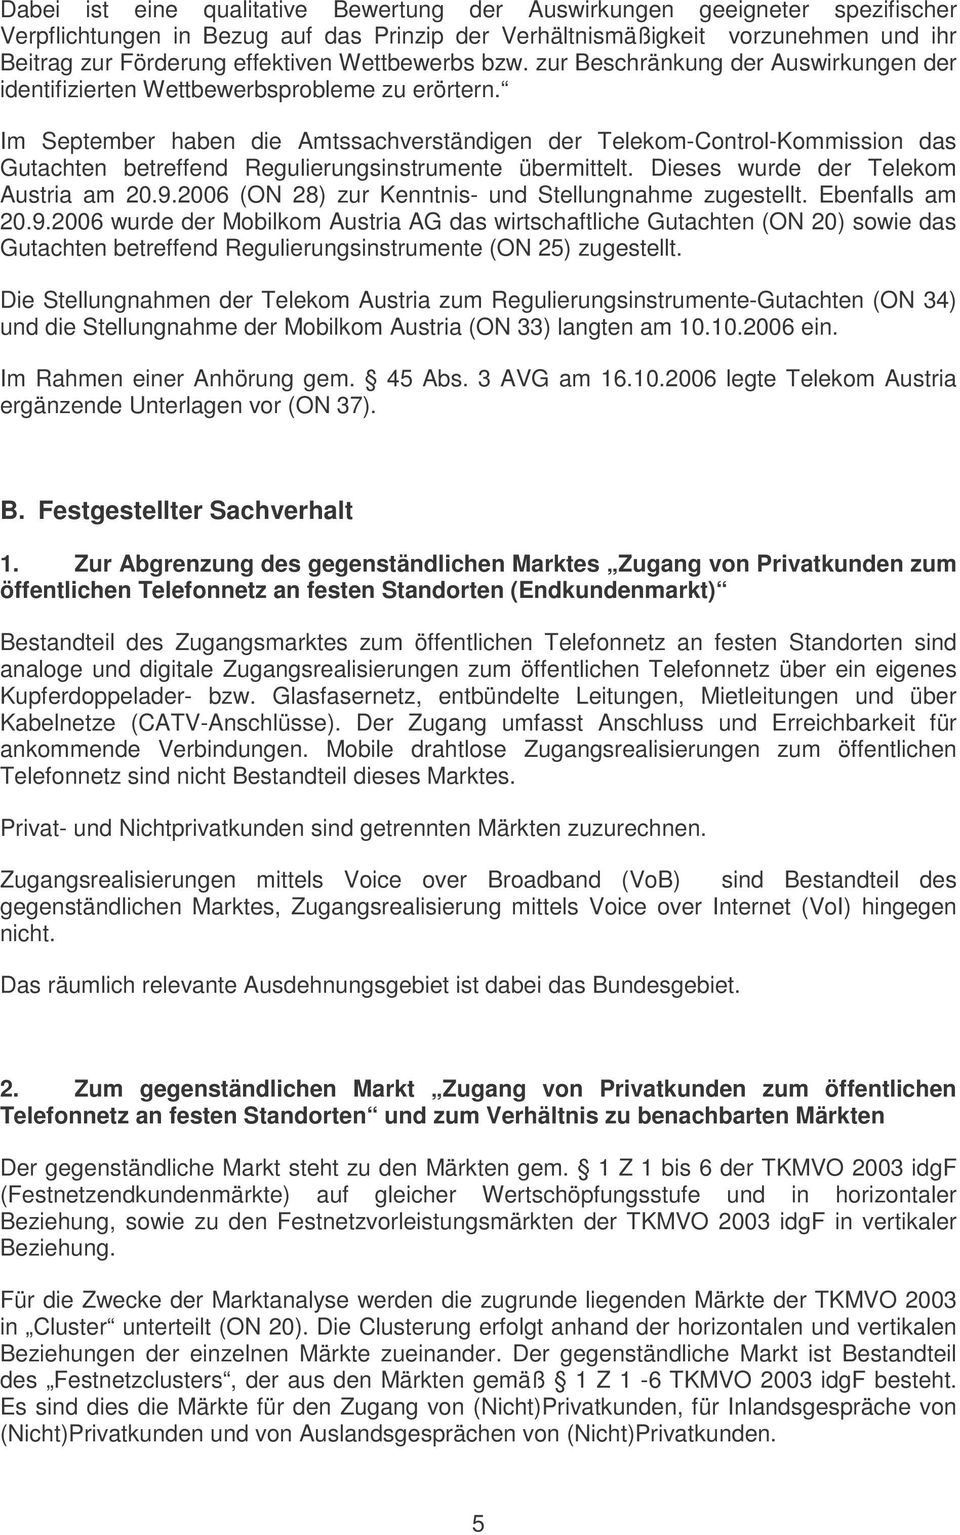 Im September haben die Amtssachverständigen der Telekom-Control-Kommission das Gutachten betreffend Regulierungsinstrumente übermittelt. Dieses wurde der Telekom Austria am 20.9.